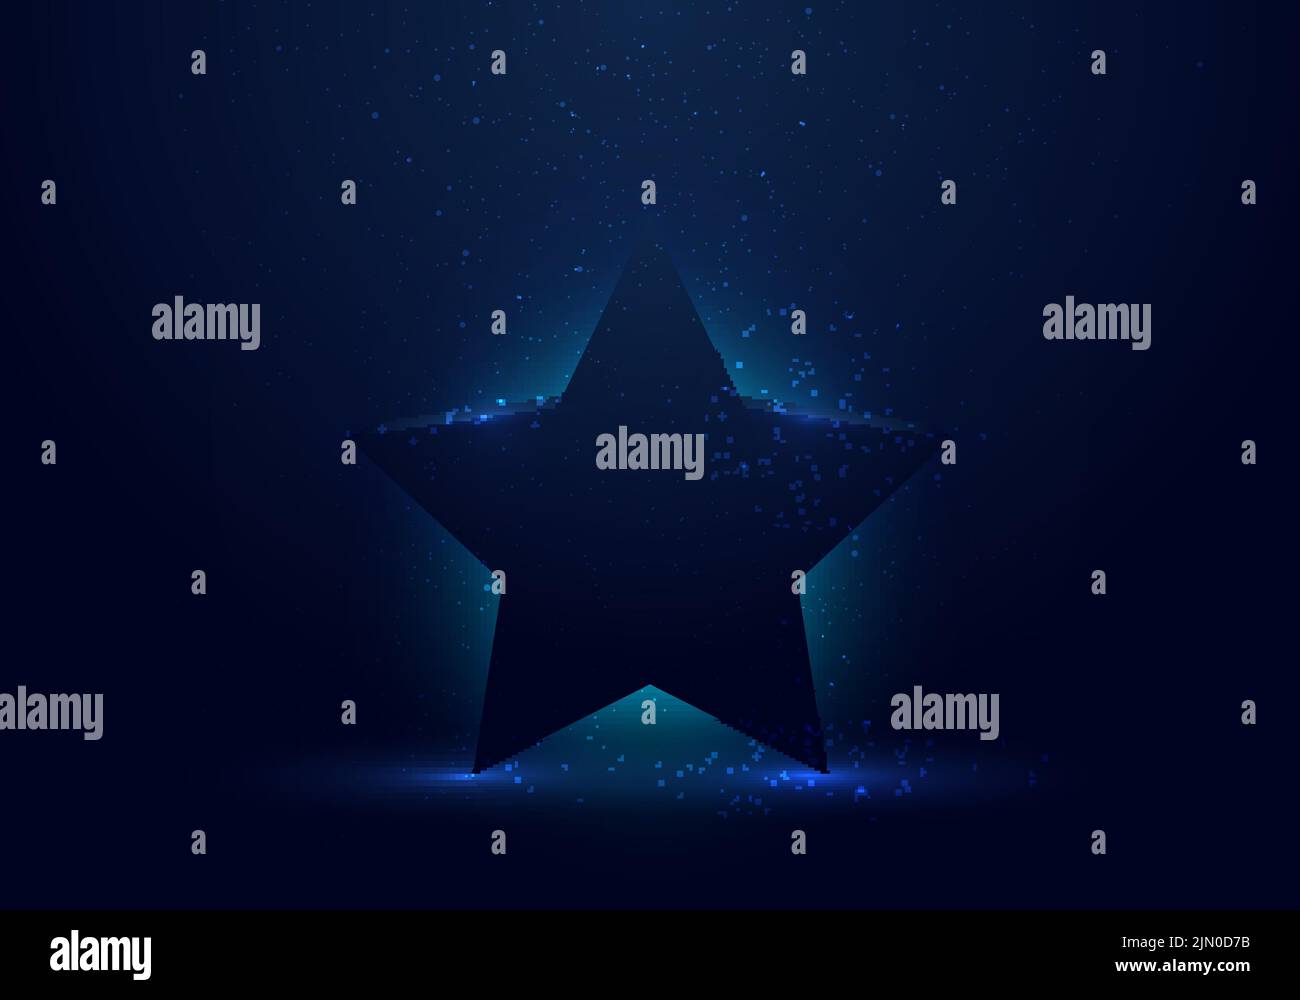 3D étoiles bleues avec lumière éclatante sur fond sombre et éclaboussures de poussière. Illustration vectorielle Illustration de Vecteur